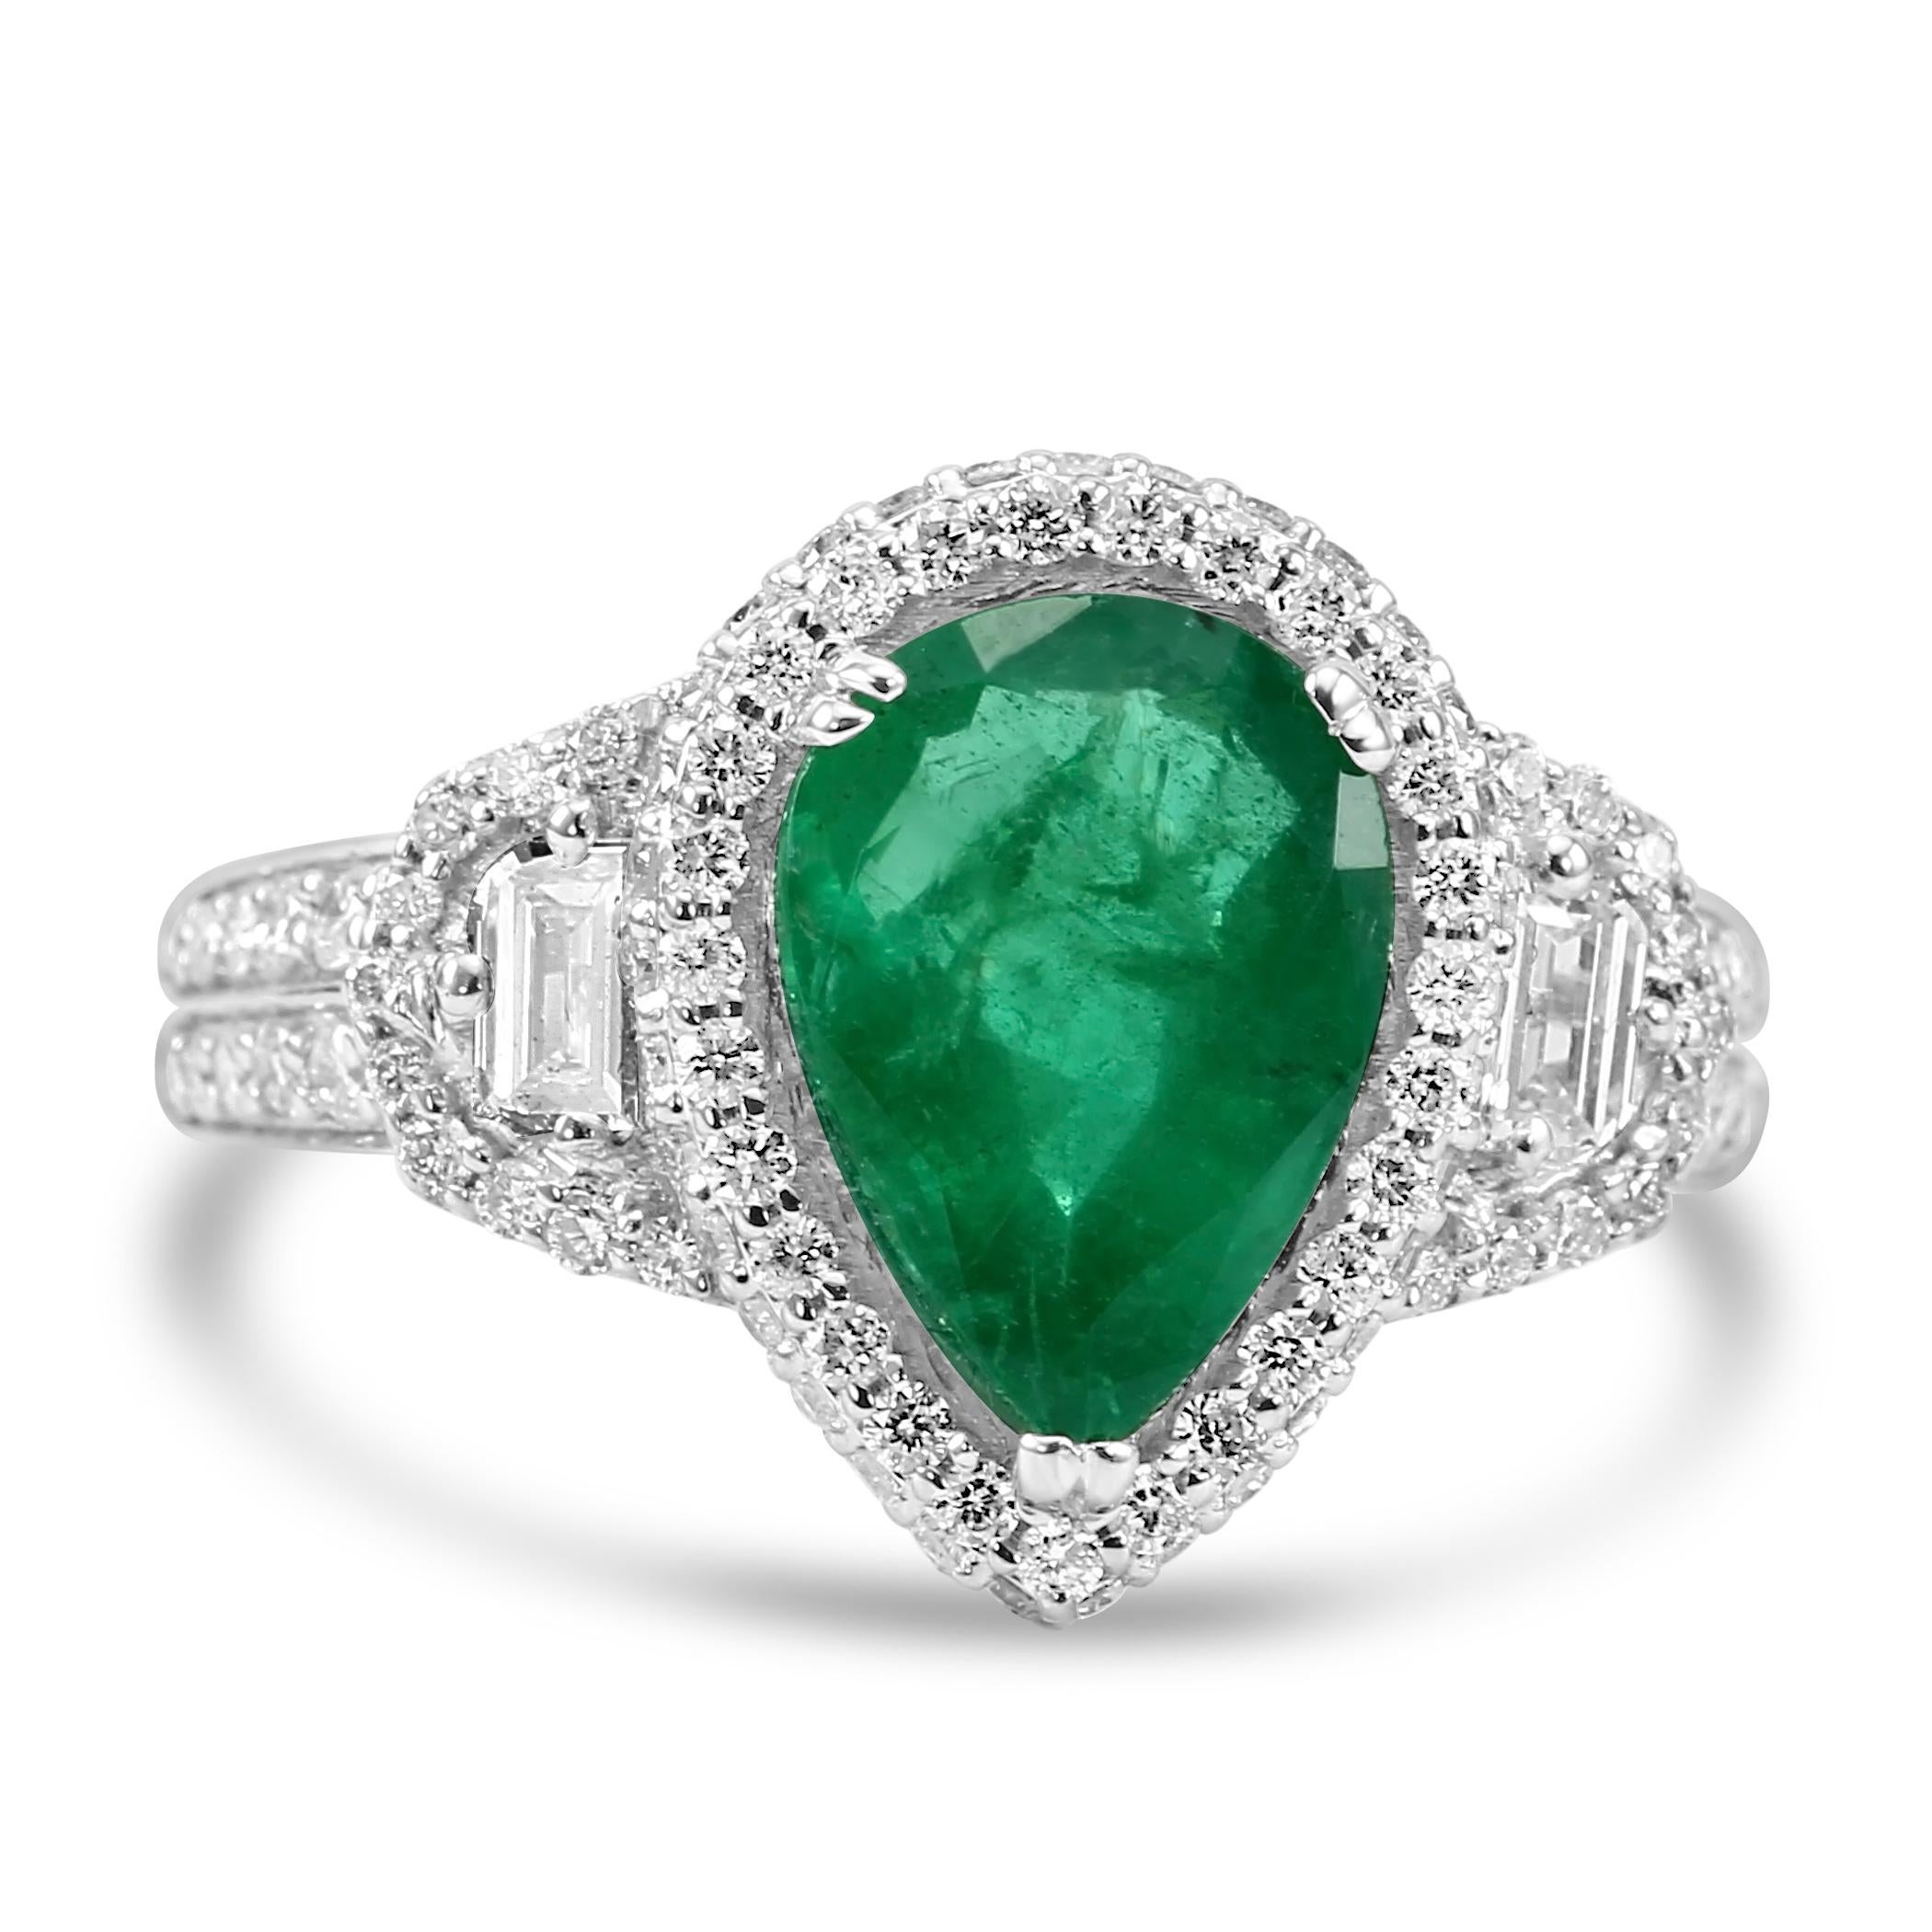 Admirez l'incarnation de l'élégance intemporelle avec notre bague Pear shaped Emerald, ornée d'une époustouflante émeraude en forme de poire au centre, pesant un poids impressionnant de 2,38 carats. Cette pierre précieuse envoûtante est flanquée de